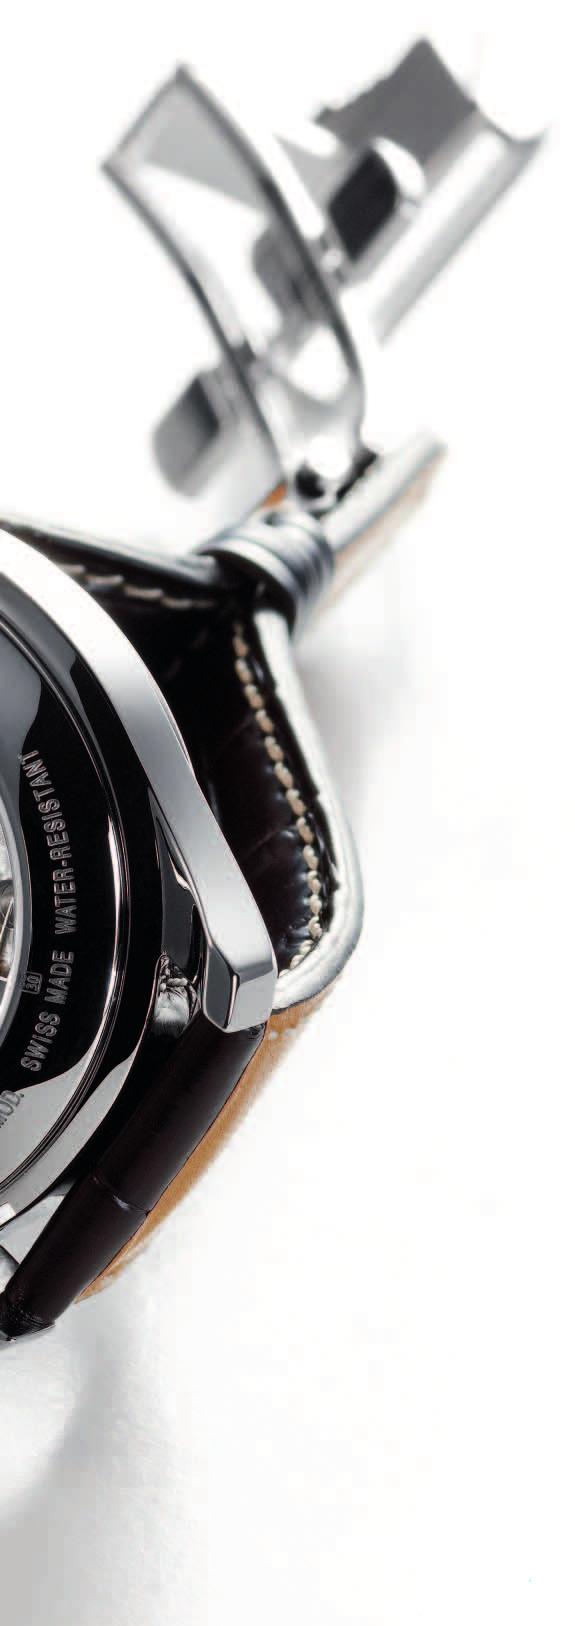 dafür. Heute sind die diversen Kaliber der Bezeichnung Eta A07XXX der Motor vieler ansehnlicher Armbanduhren unterschiedlicher Fabrikate in verschiedensten Ausführungen.